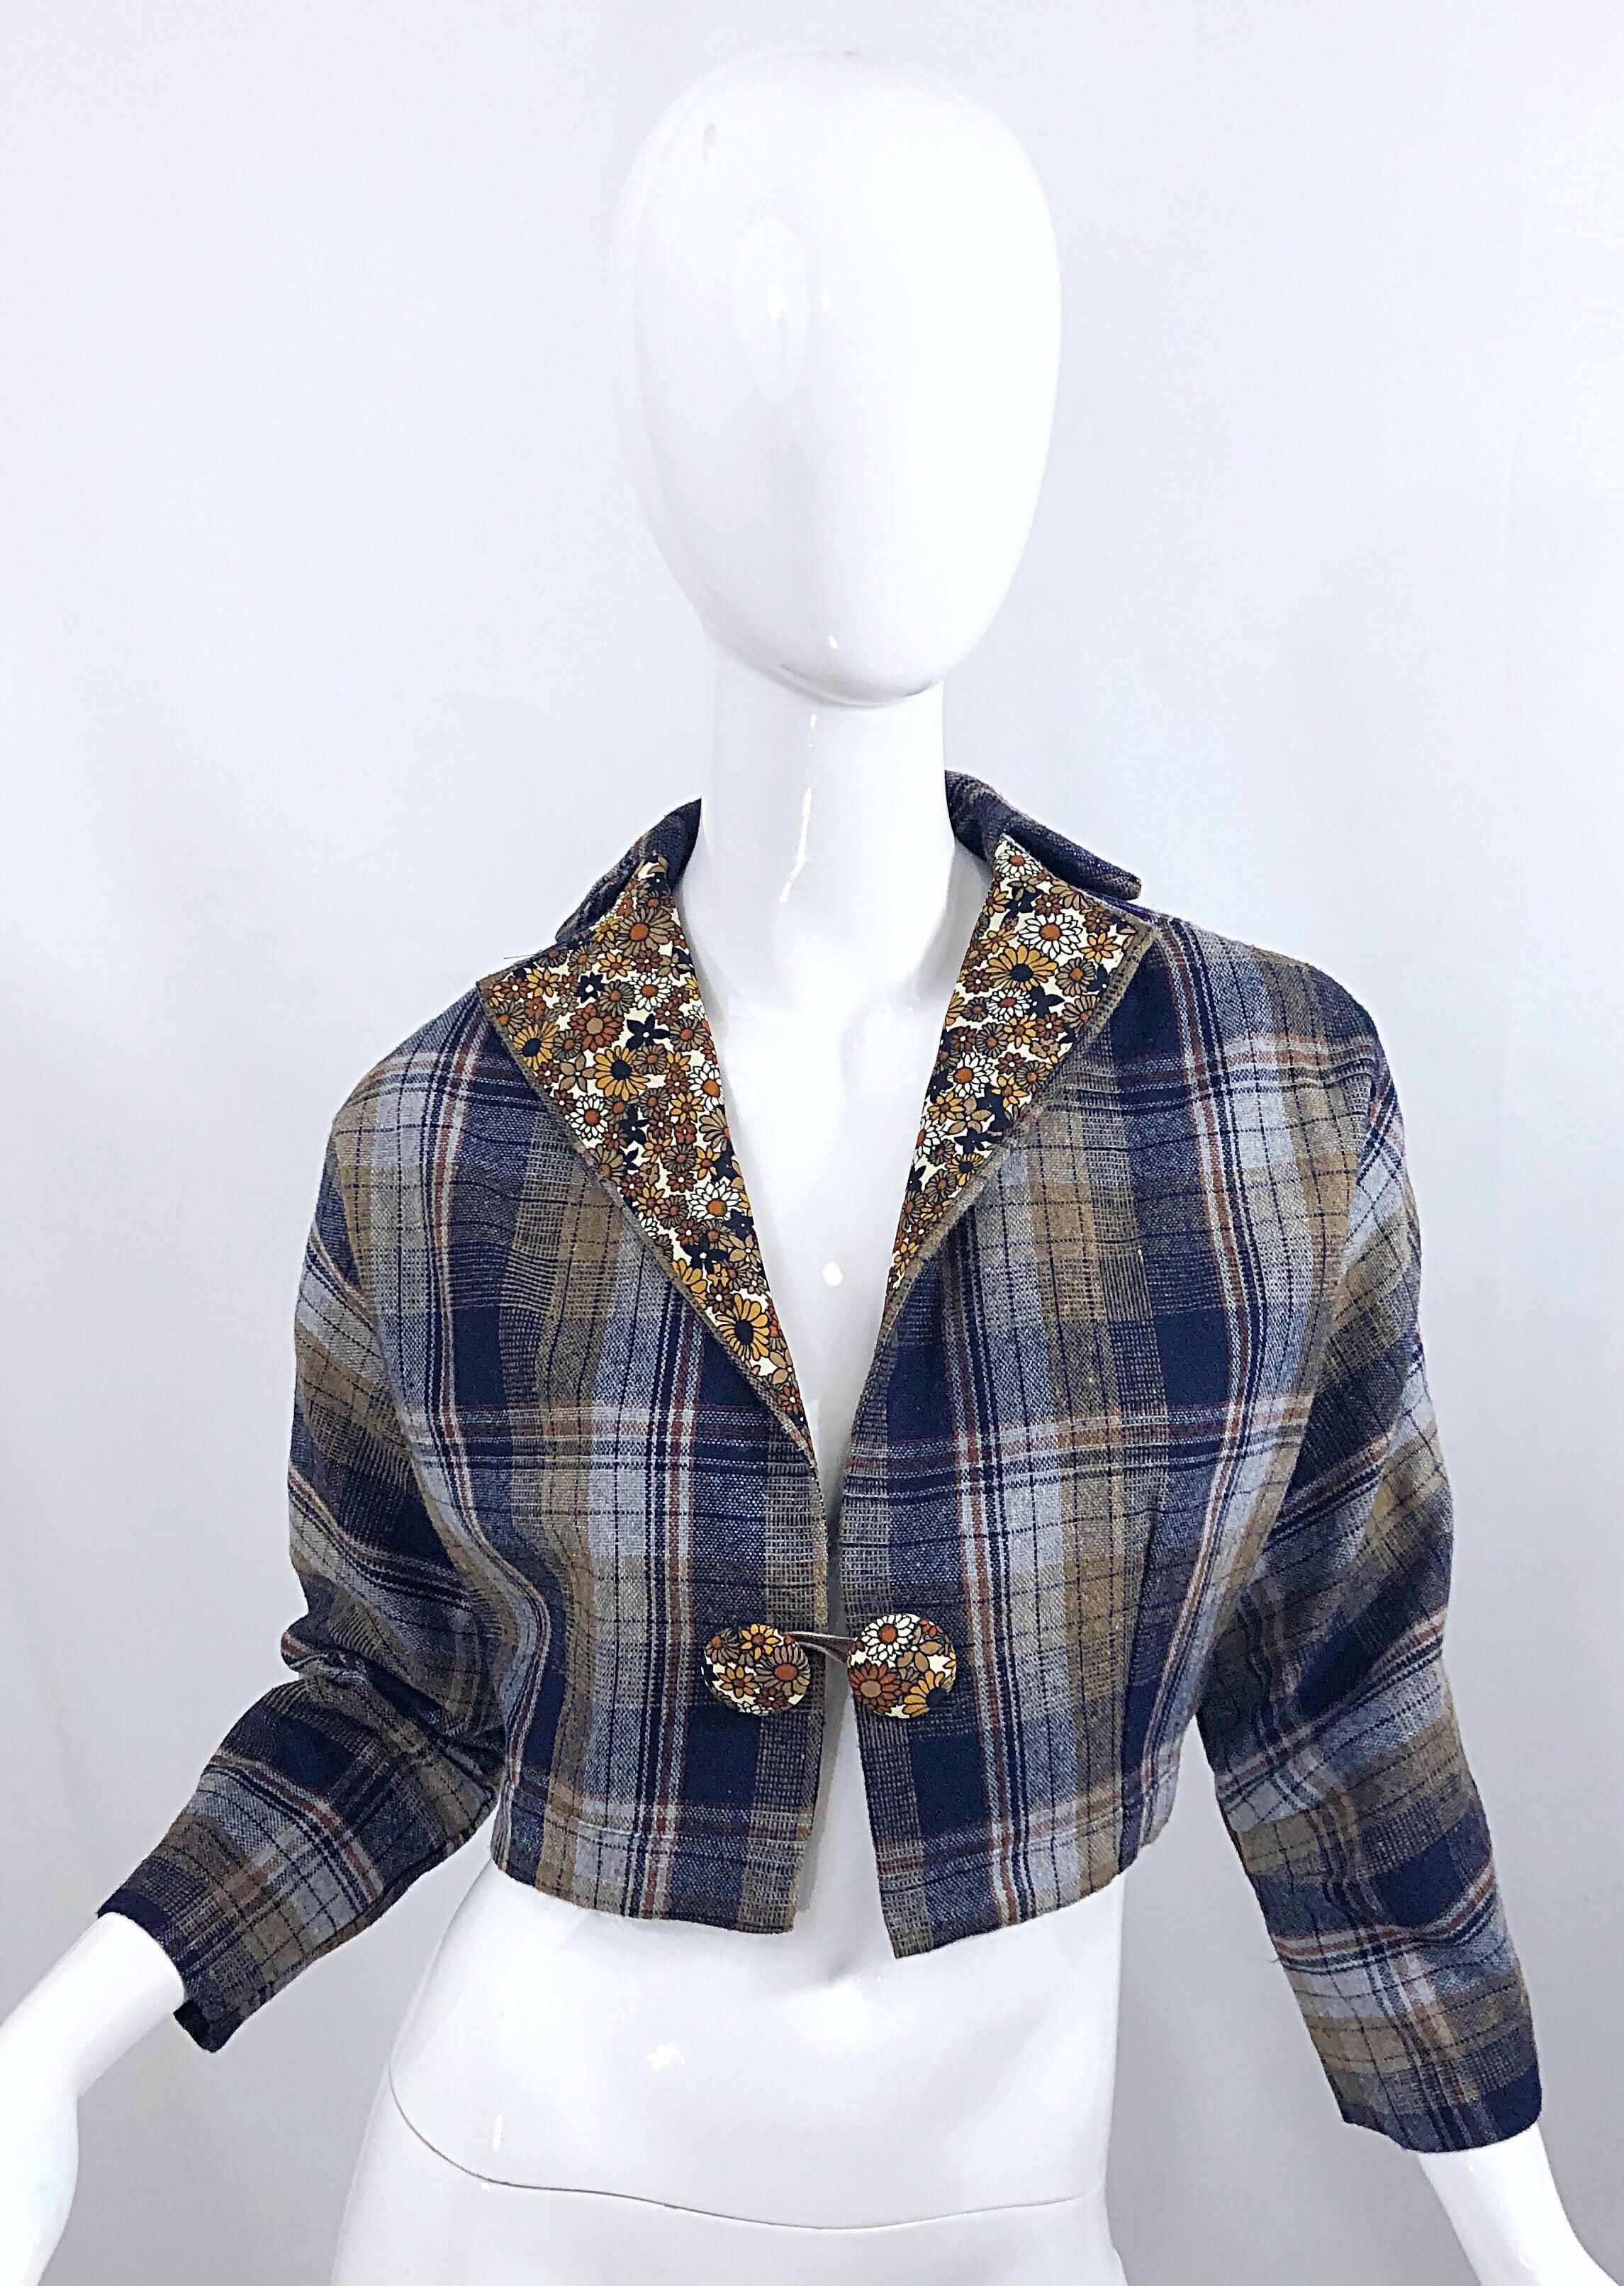 Chic veste boléro vintage des années 60 en laine et soie imprimée à carreaux et fleurs ! Il est composé d'un tissu écossais, d'une petite doublure florale en soie qui s'étend sur le col et de boutons surdimensionnés. Les manches Dolman permettent à